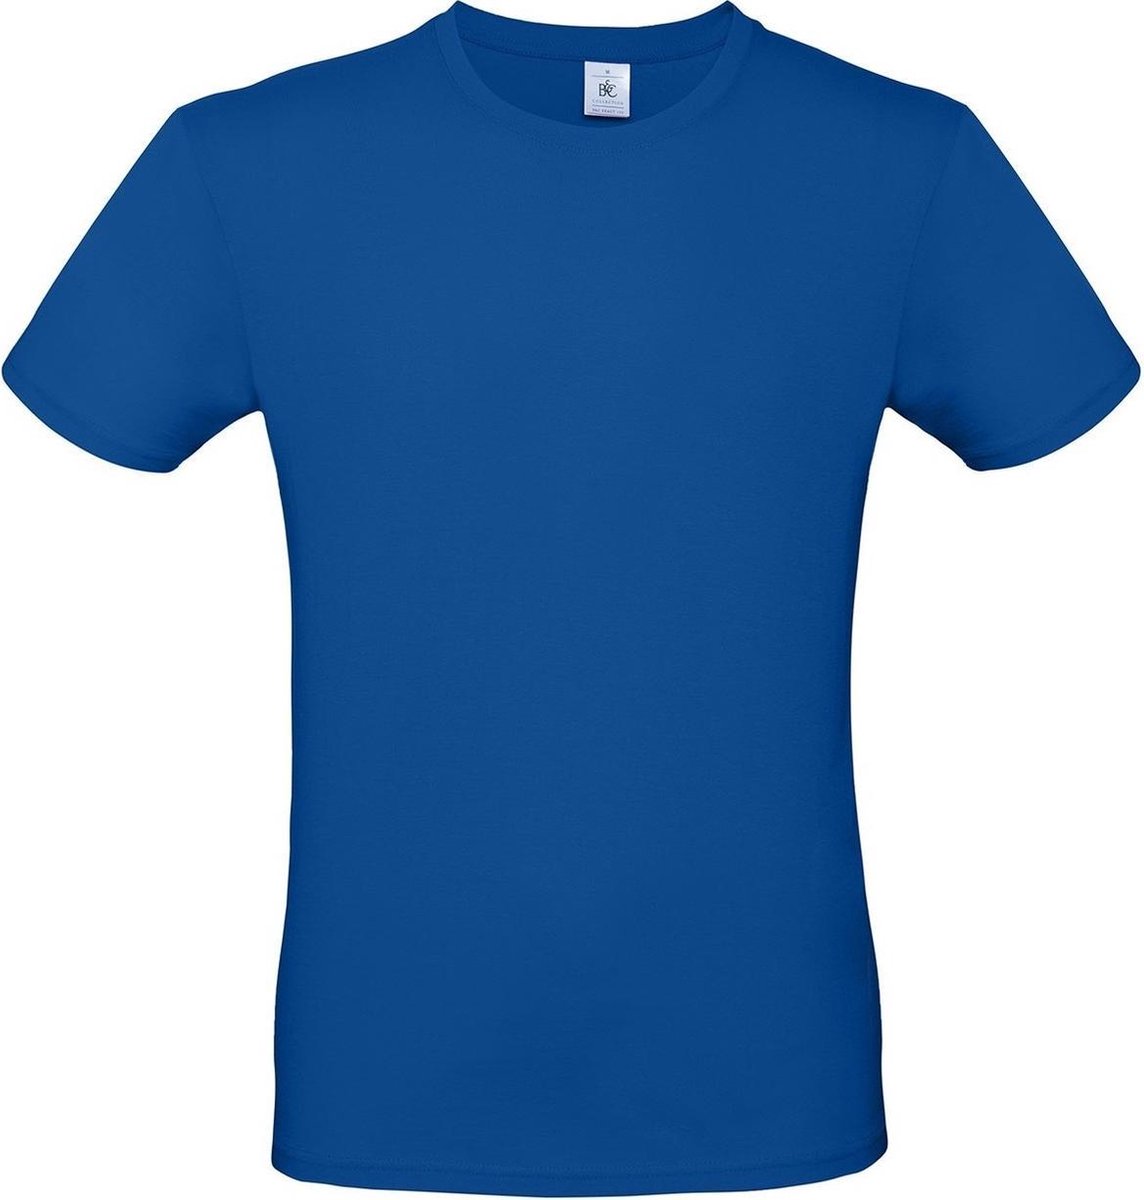 Set van 2x stuks blauw basic t-shirt met ronde hals voor heren - katoen - 145 grams - witte shirts / kleding, maat: S (48)